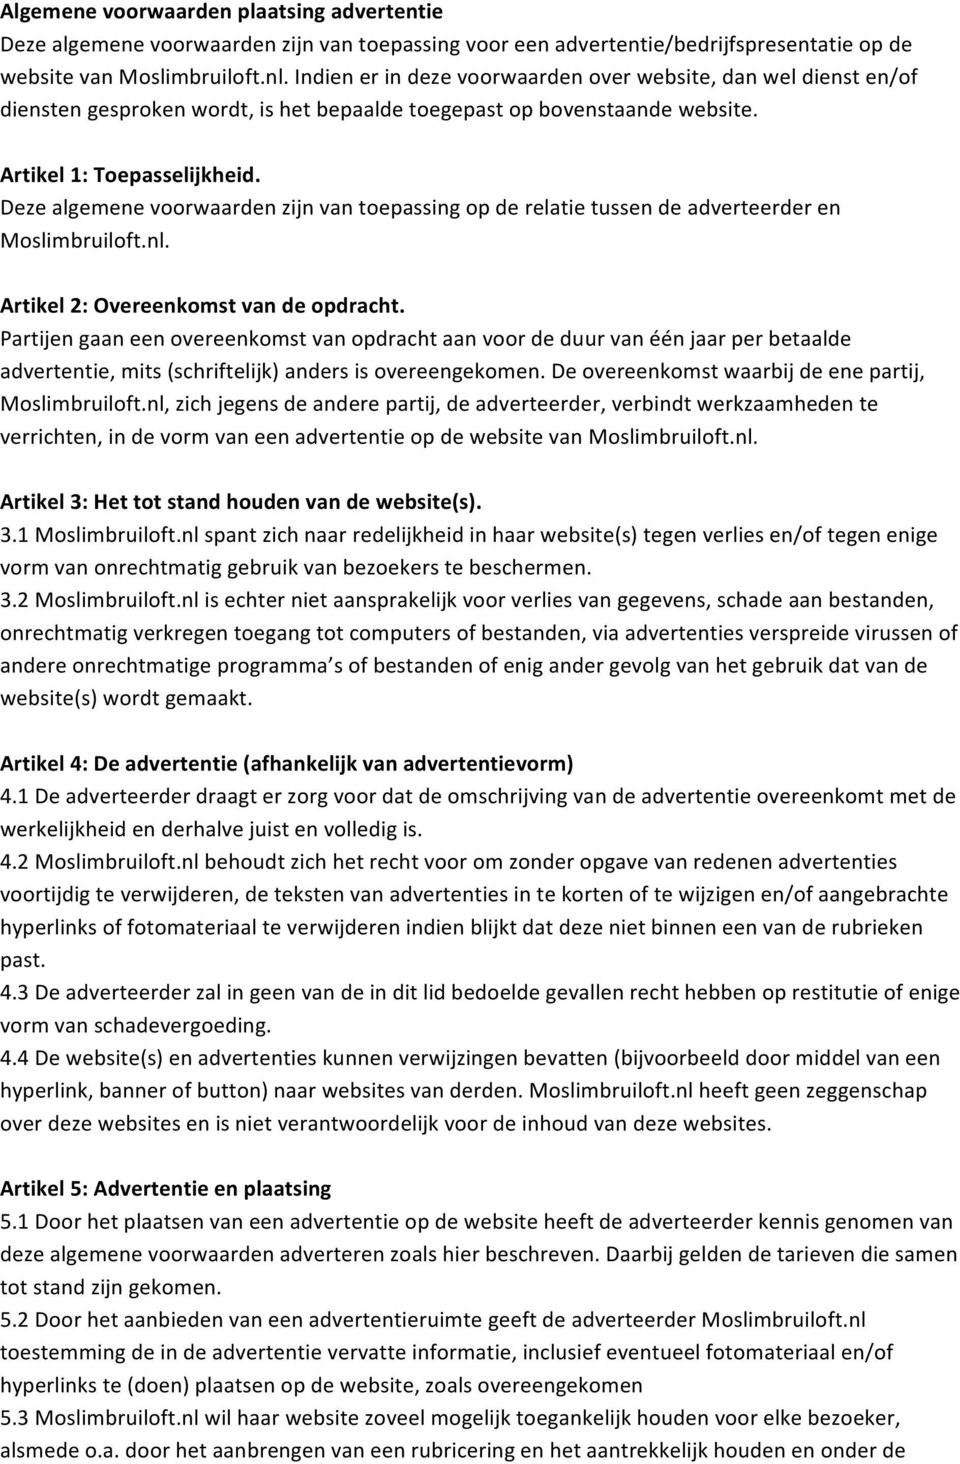 Deze algemene voorwaarden zijn van toepassing op de relatie tussen de adverteerder en Moslimbruiloft.nl. Artikel 2: Overeenkomst van de opdracht.